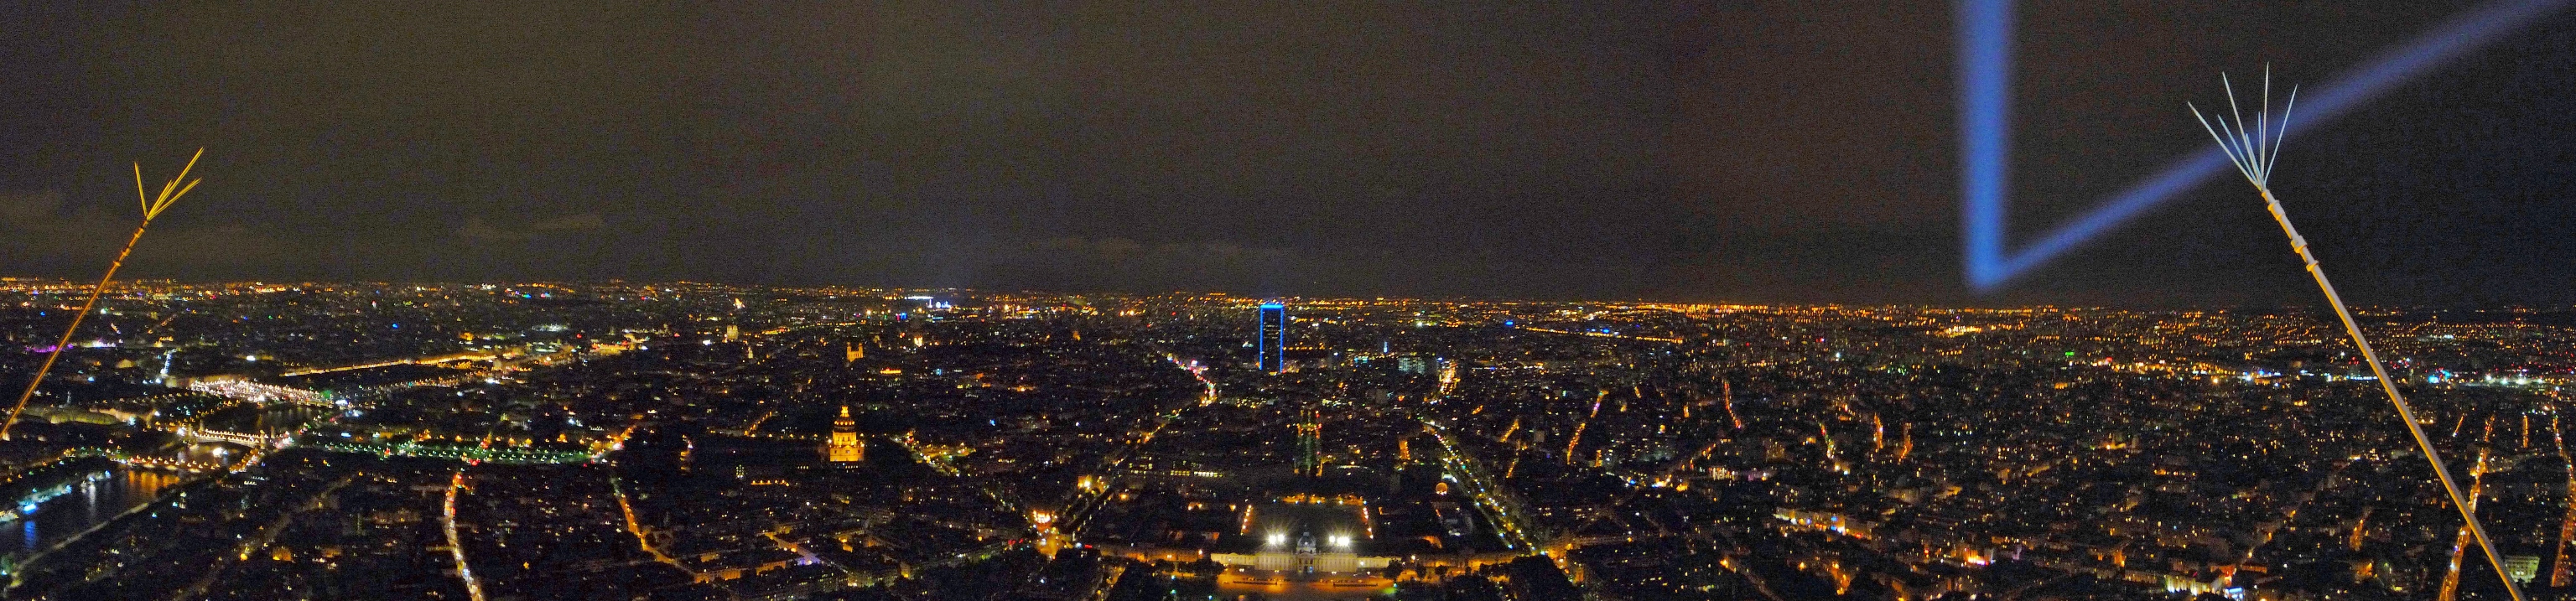  Ночная панорама Парижа